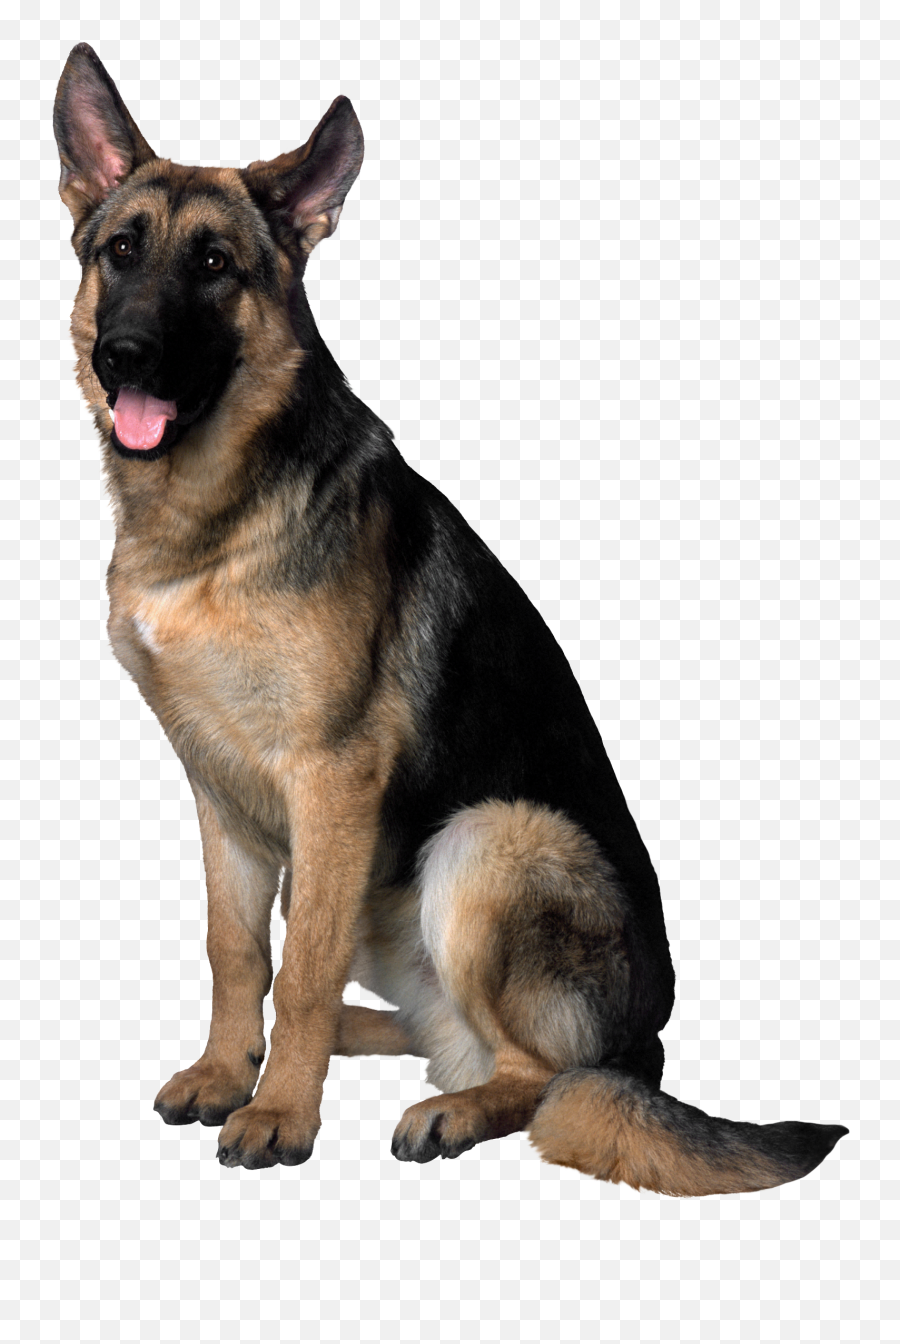 Dog Transparent Png Collections - German Shepherd Transparent Background,Snapchat Dog Filter Transparent